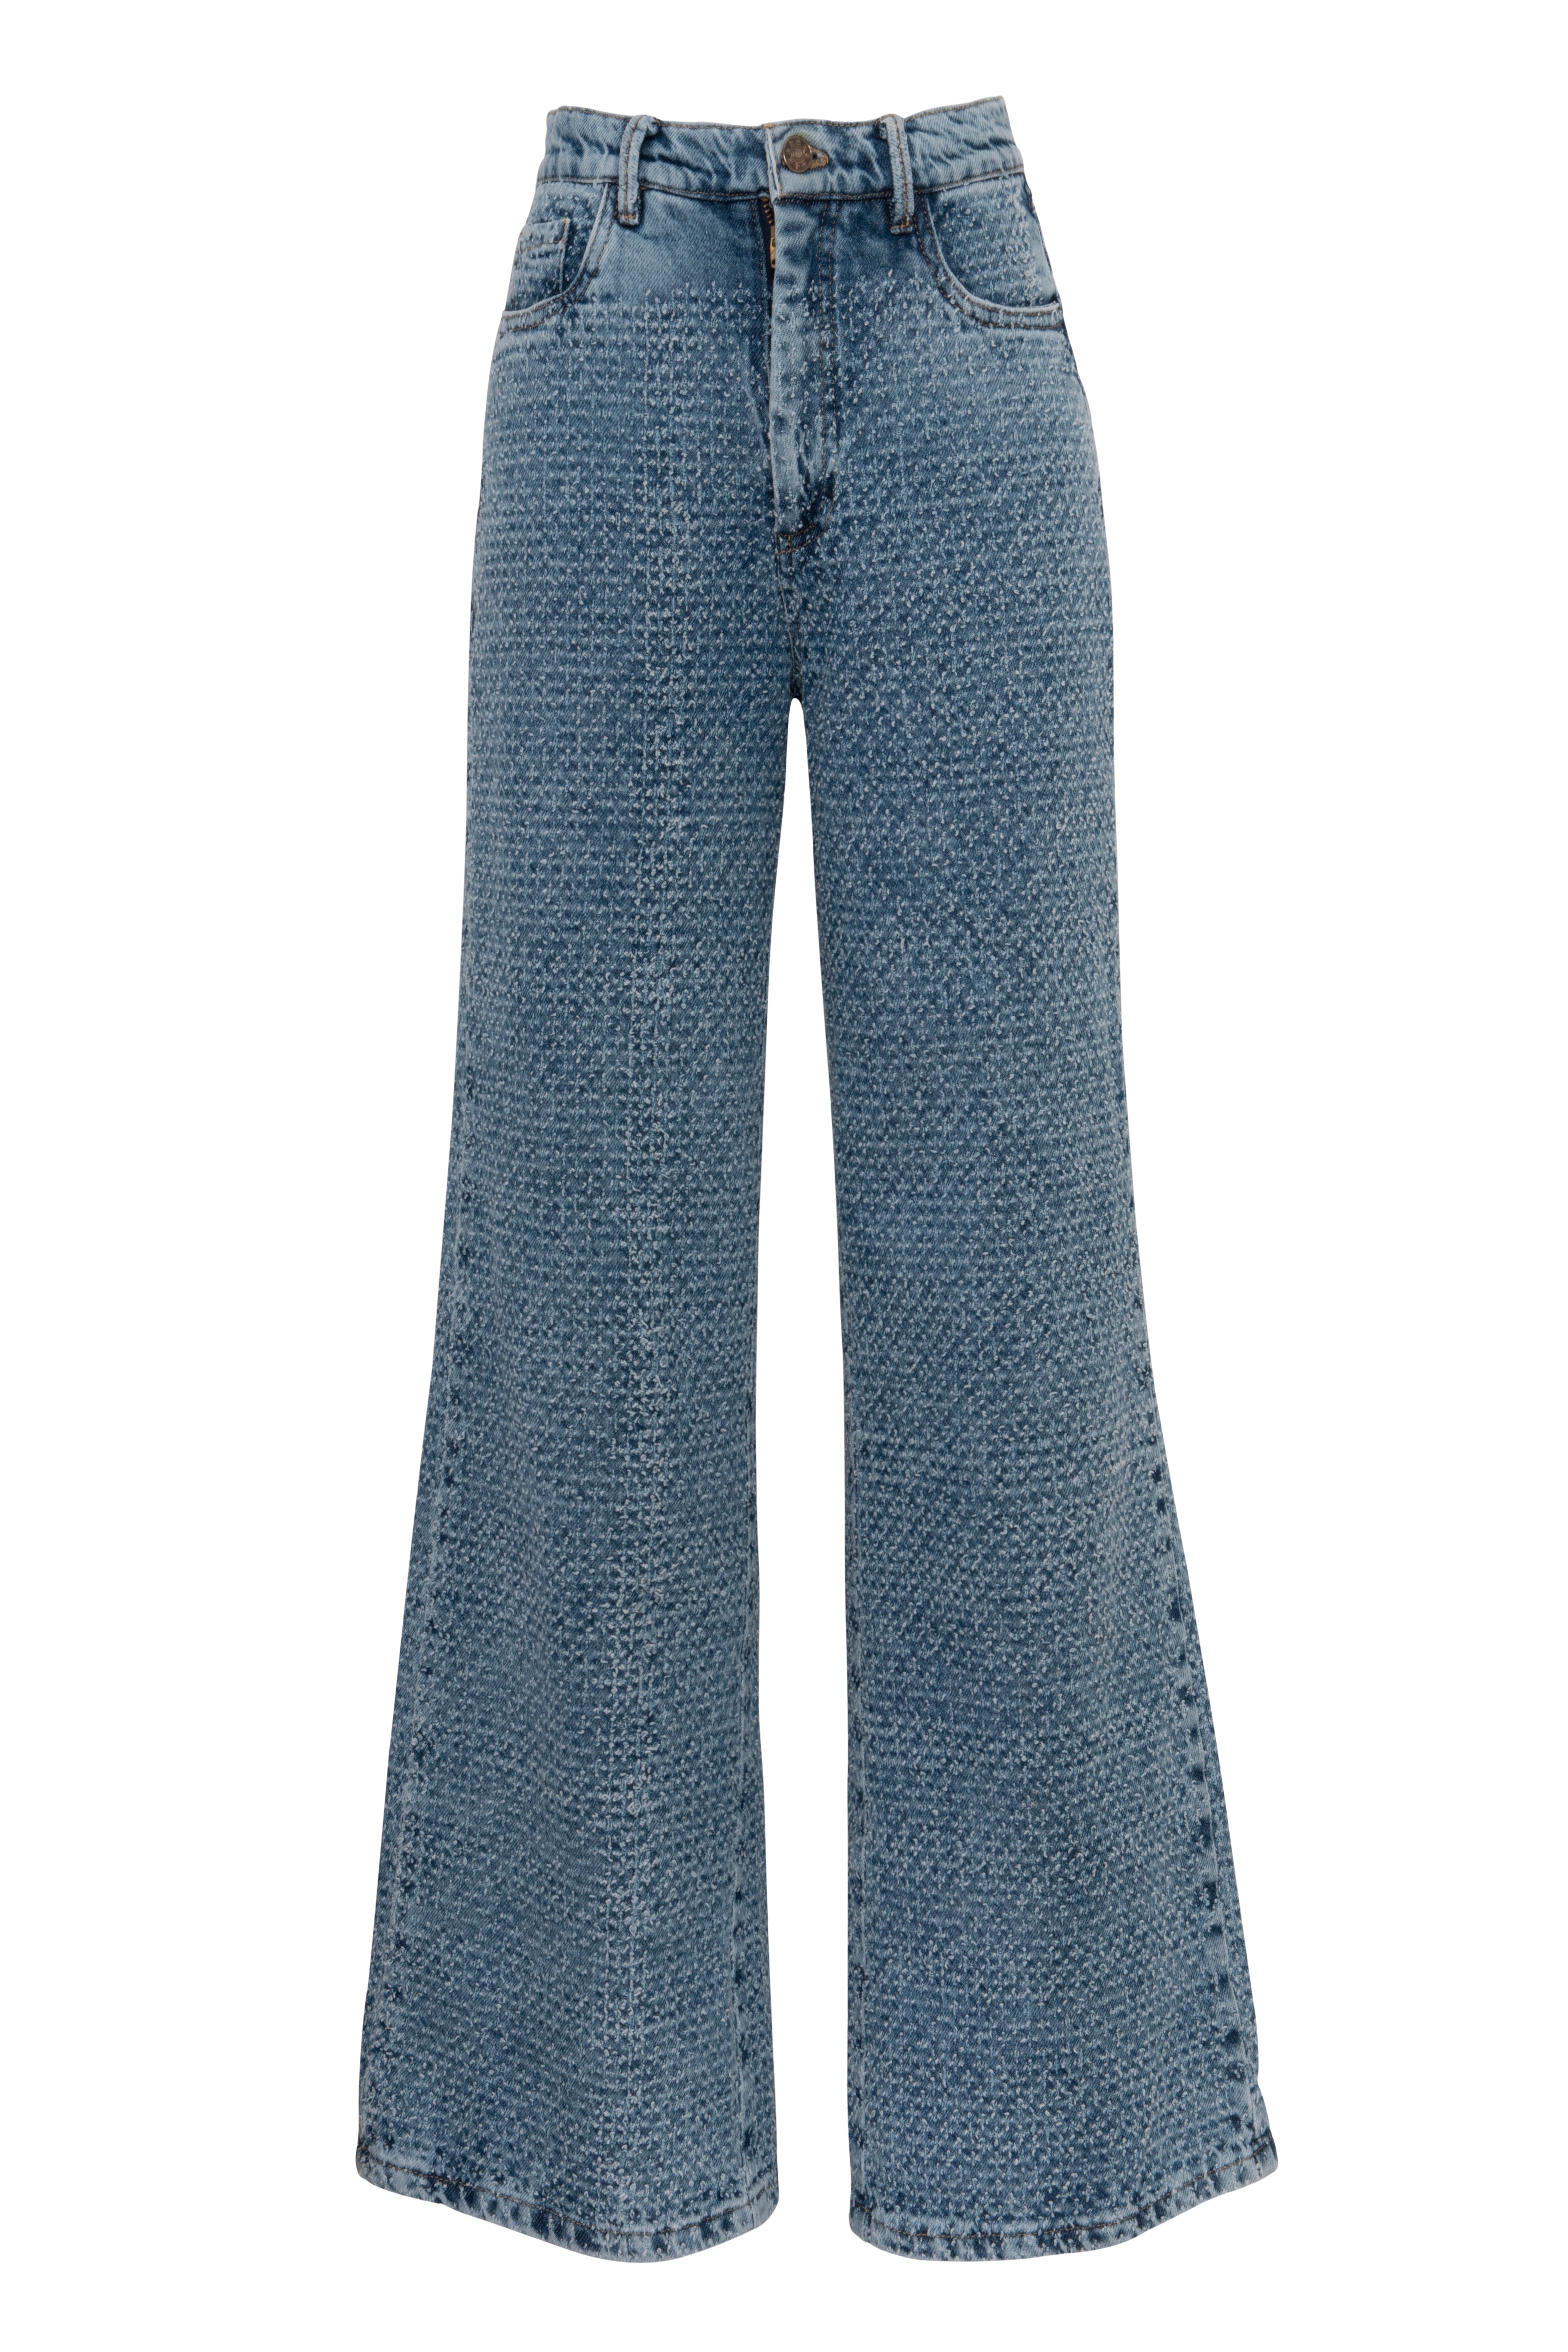 Ava Textured Straight Jeans